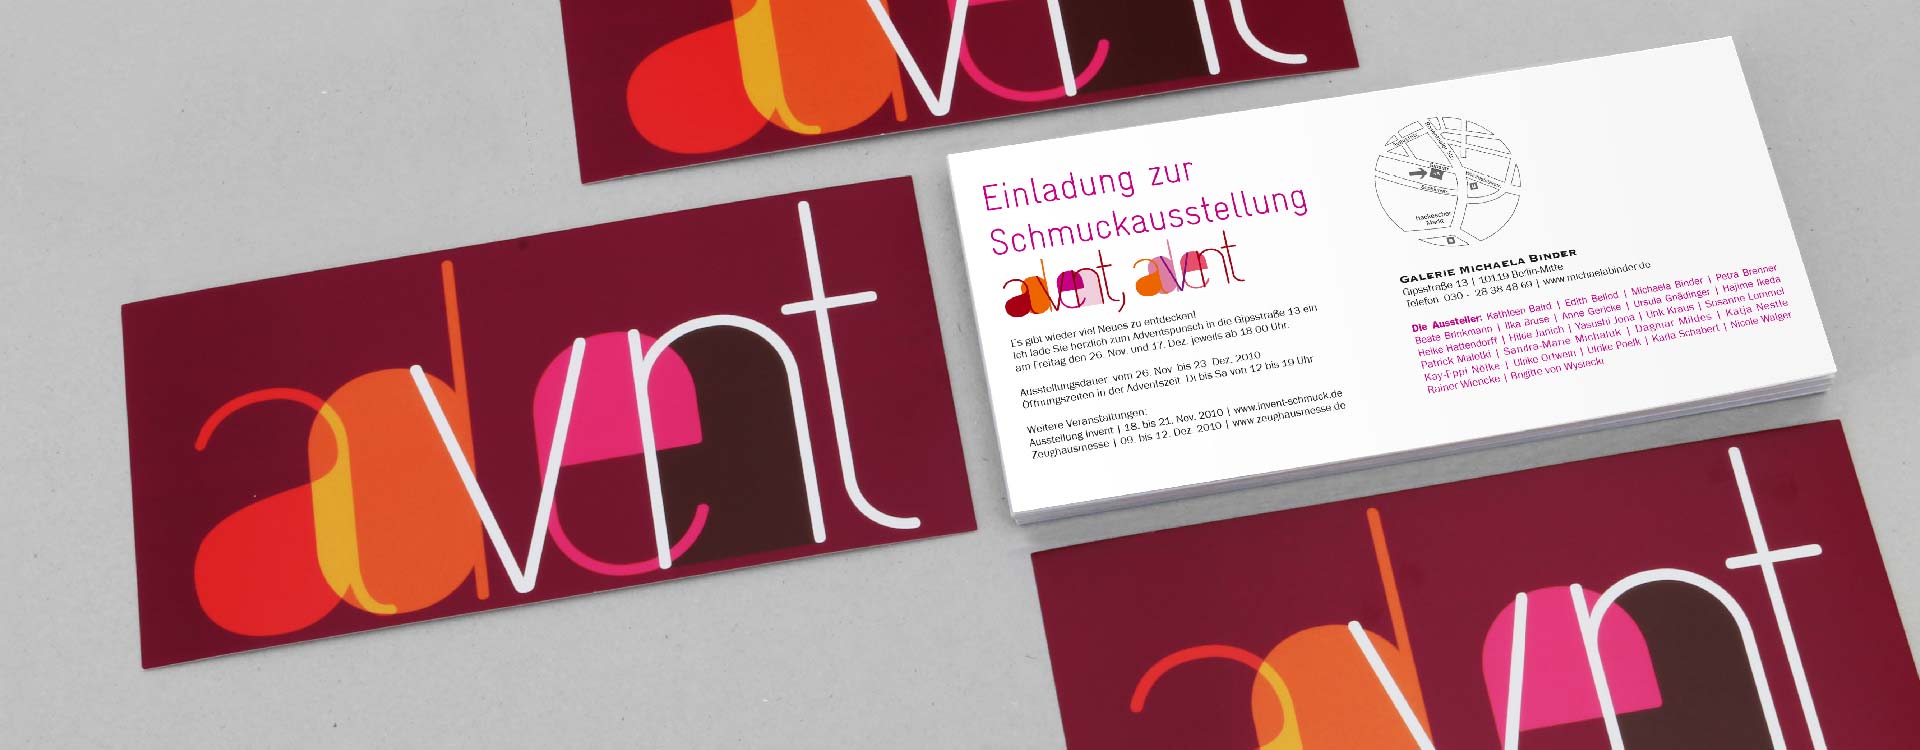 Einladungskarte zur Schmuckausstellung 2010 in der Galerie Michaela Binder, Berlin; Design: Kattrin Richter | Büro für Grafikdesign